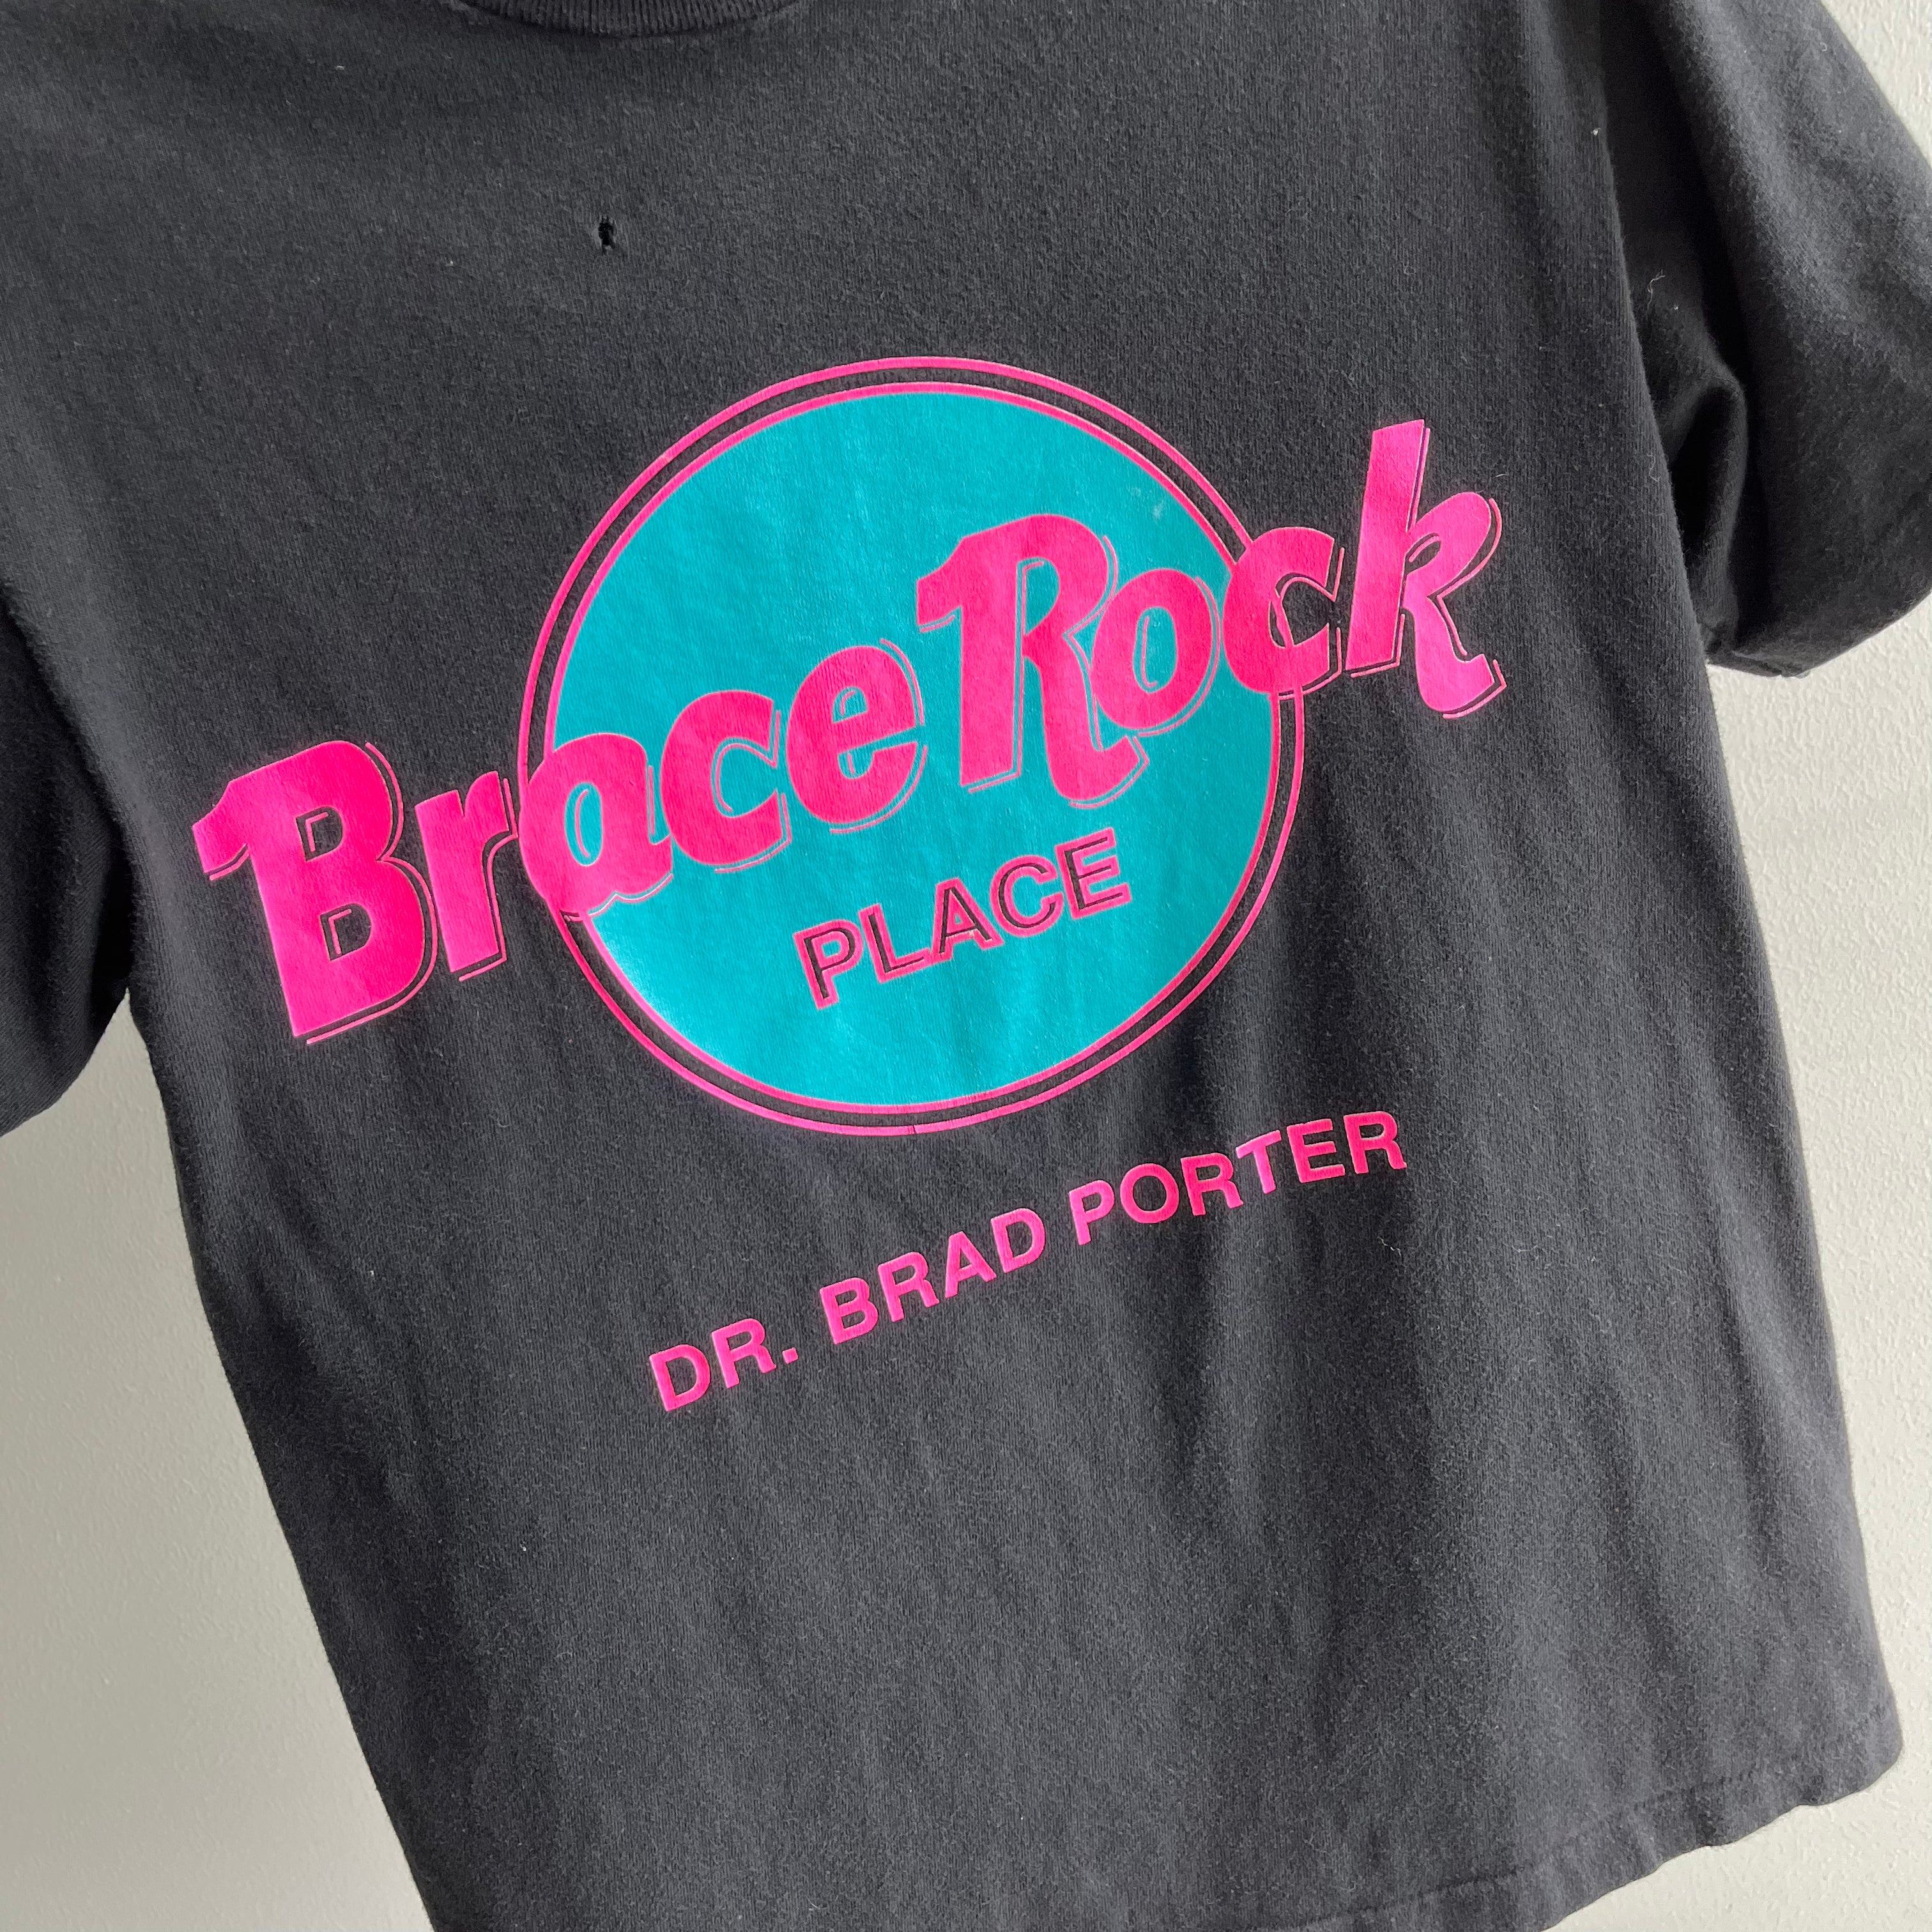 1990s Brace Rock Orthodontist Dad Joke T-Shirt - WOW